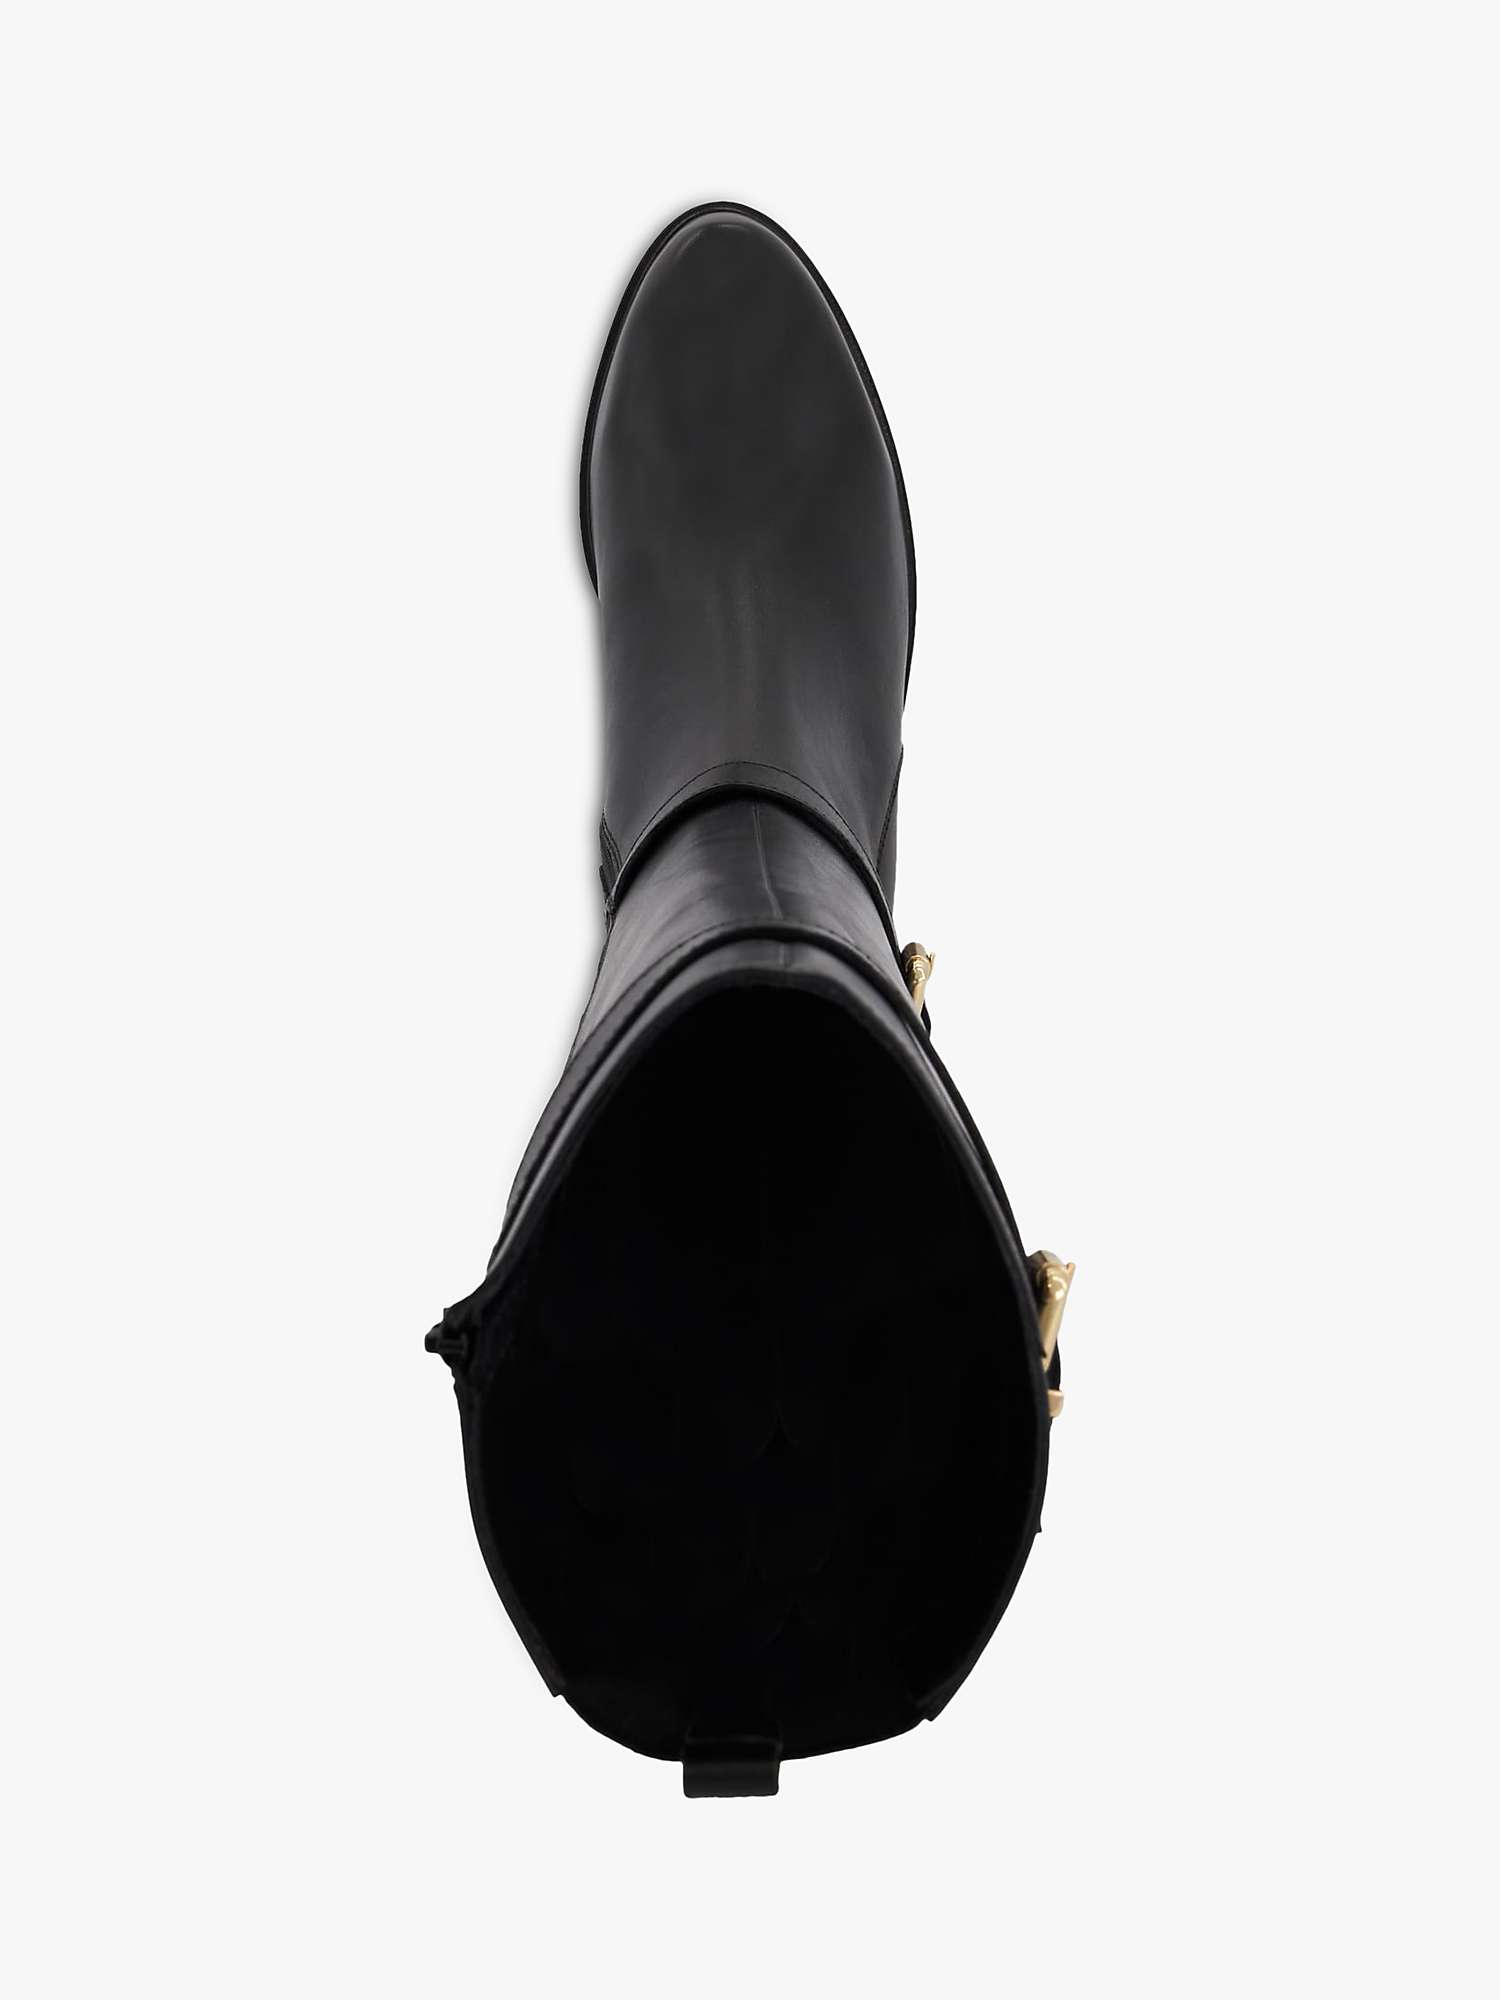 Buy Dune Tepi Leather Branded Trim Knee Boots, Black Online at johnlewis.com